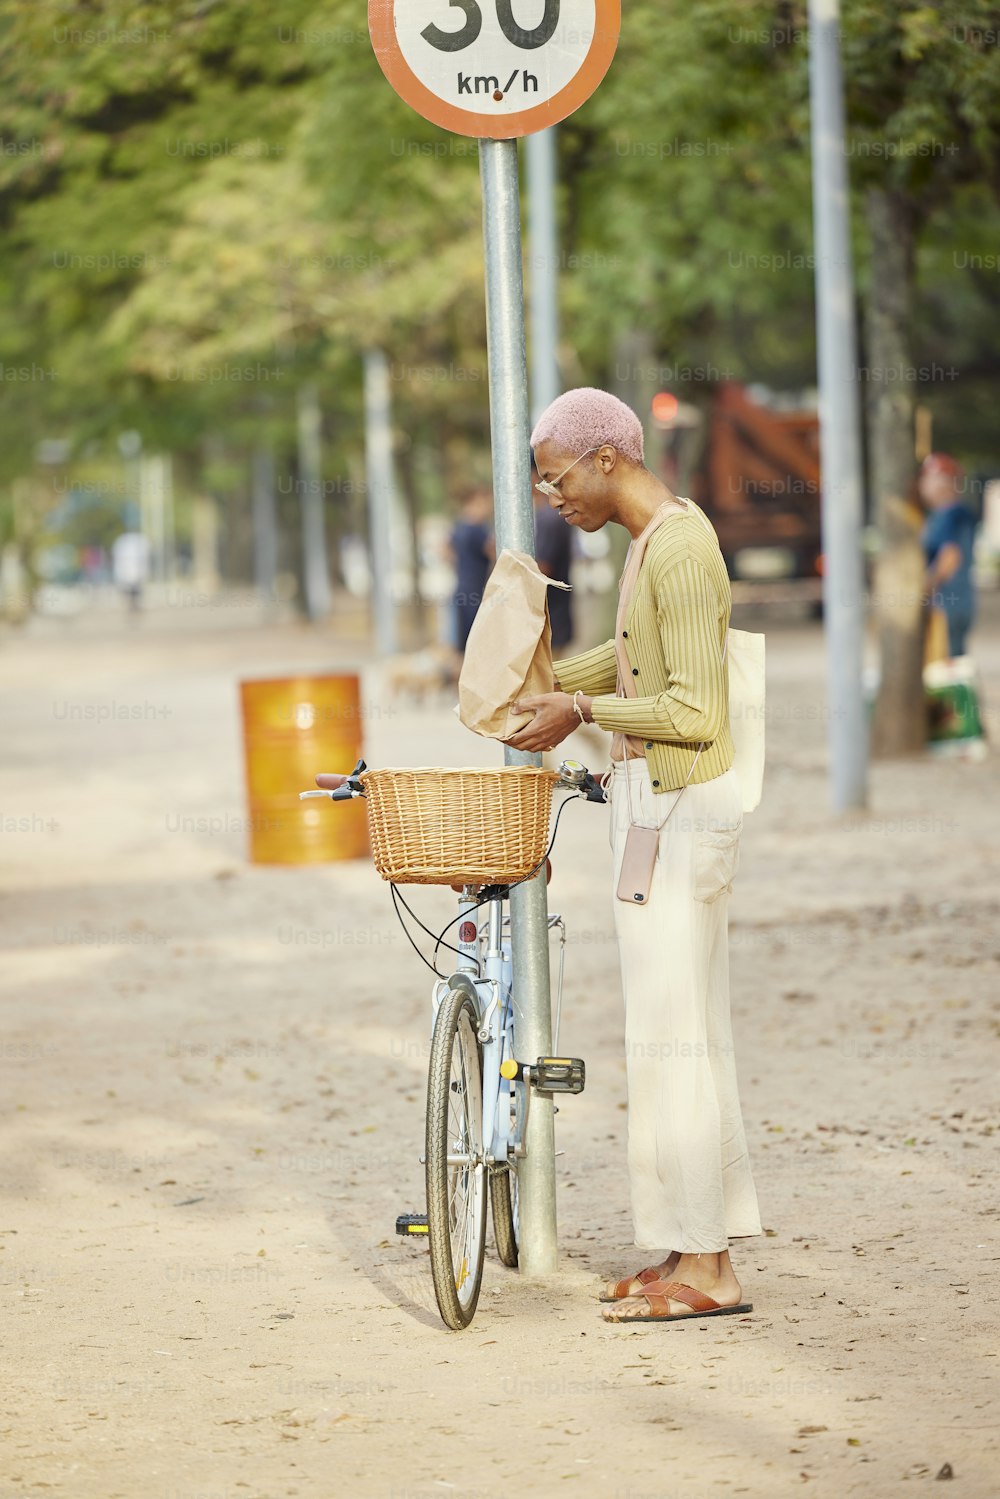 Un hombre parado junto a una bicicleta junto a una señal de velocidad